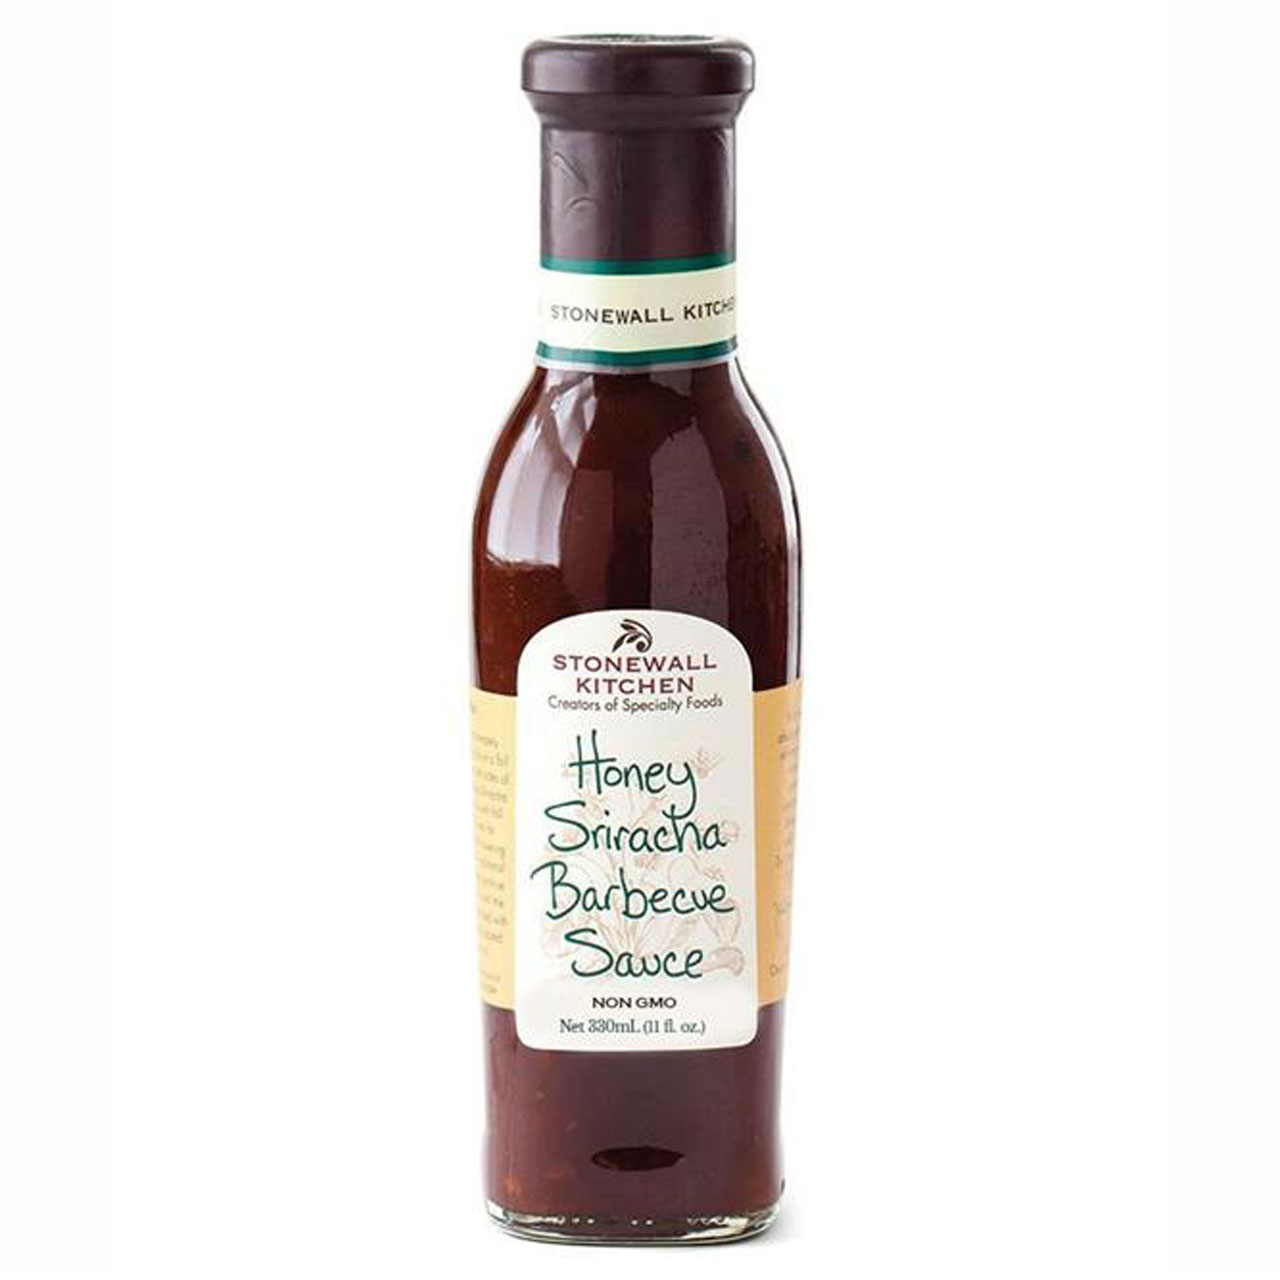 Stonewall Kitchen - Honey Sriracha Barbecue Sauce